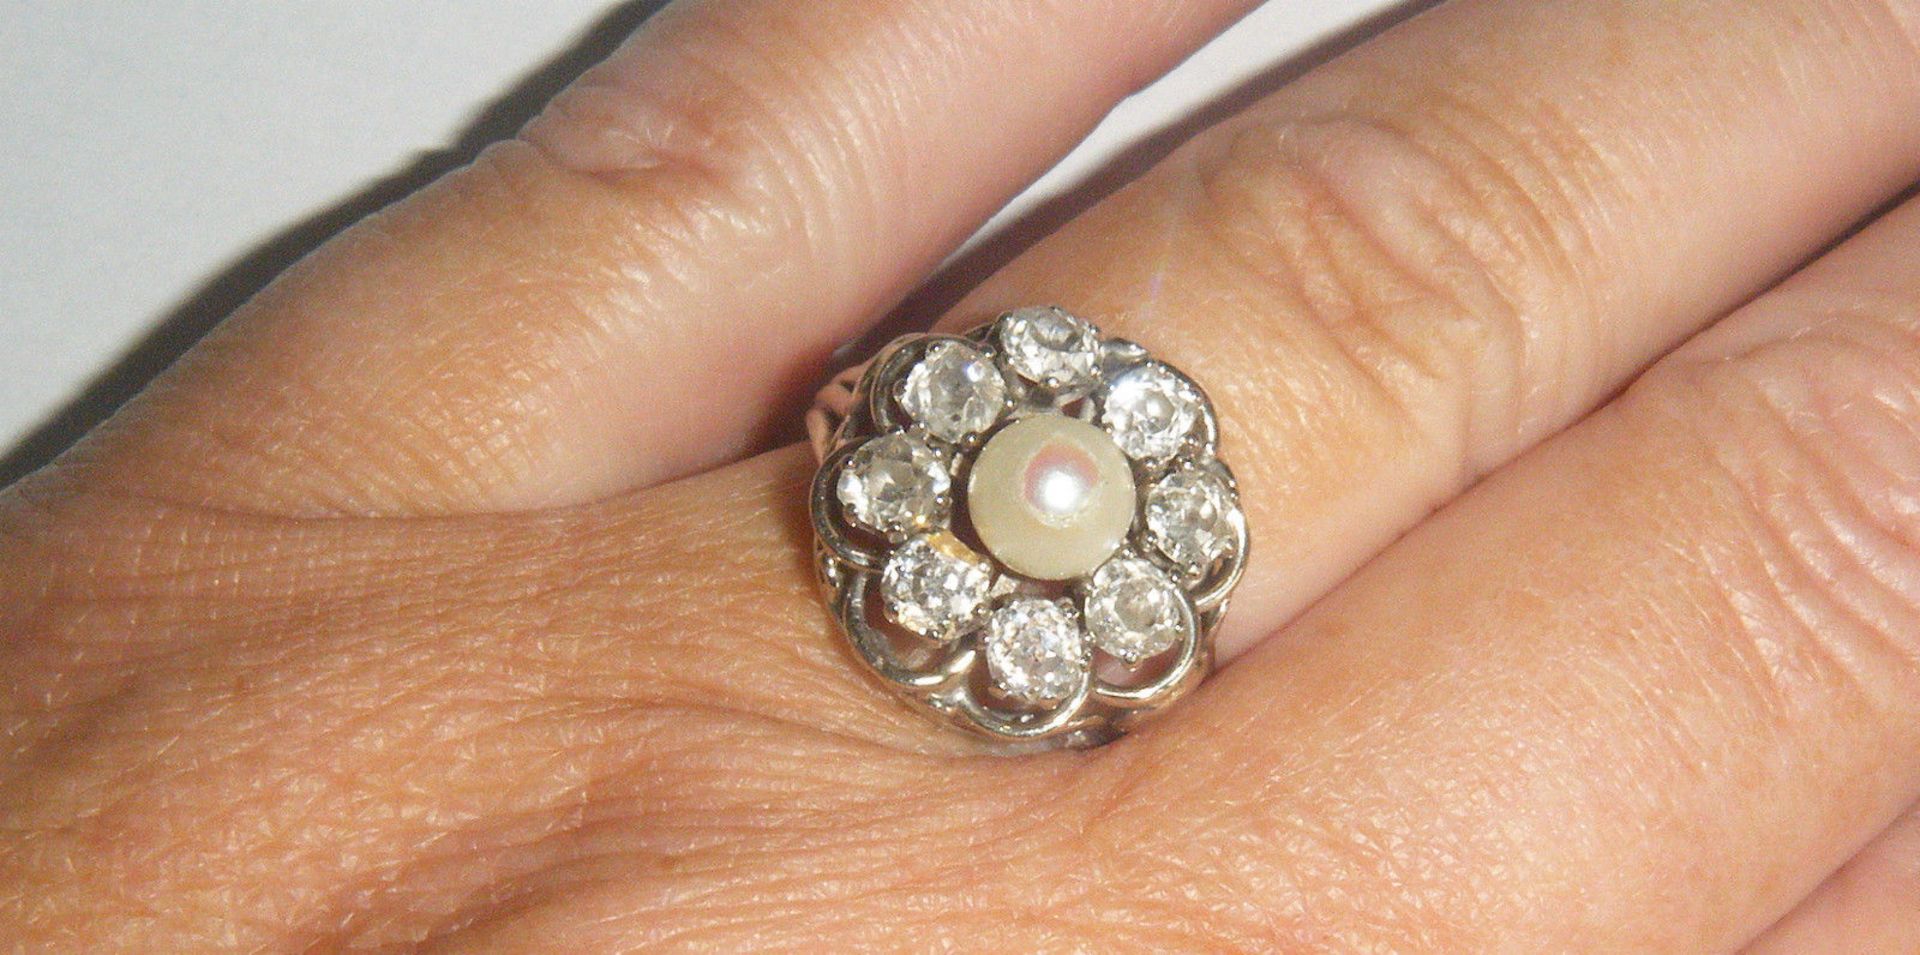 Antique 18ct Gold Diamond Platinum Pearl Ring - Image 2 of 4